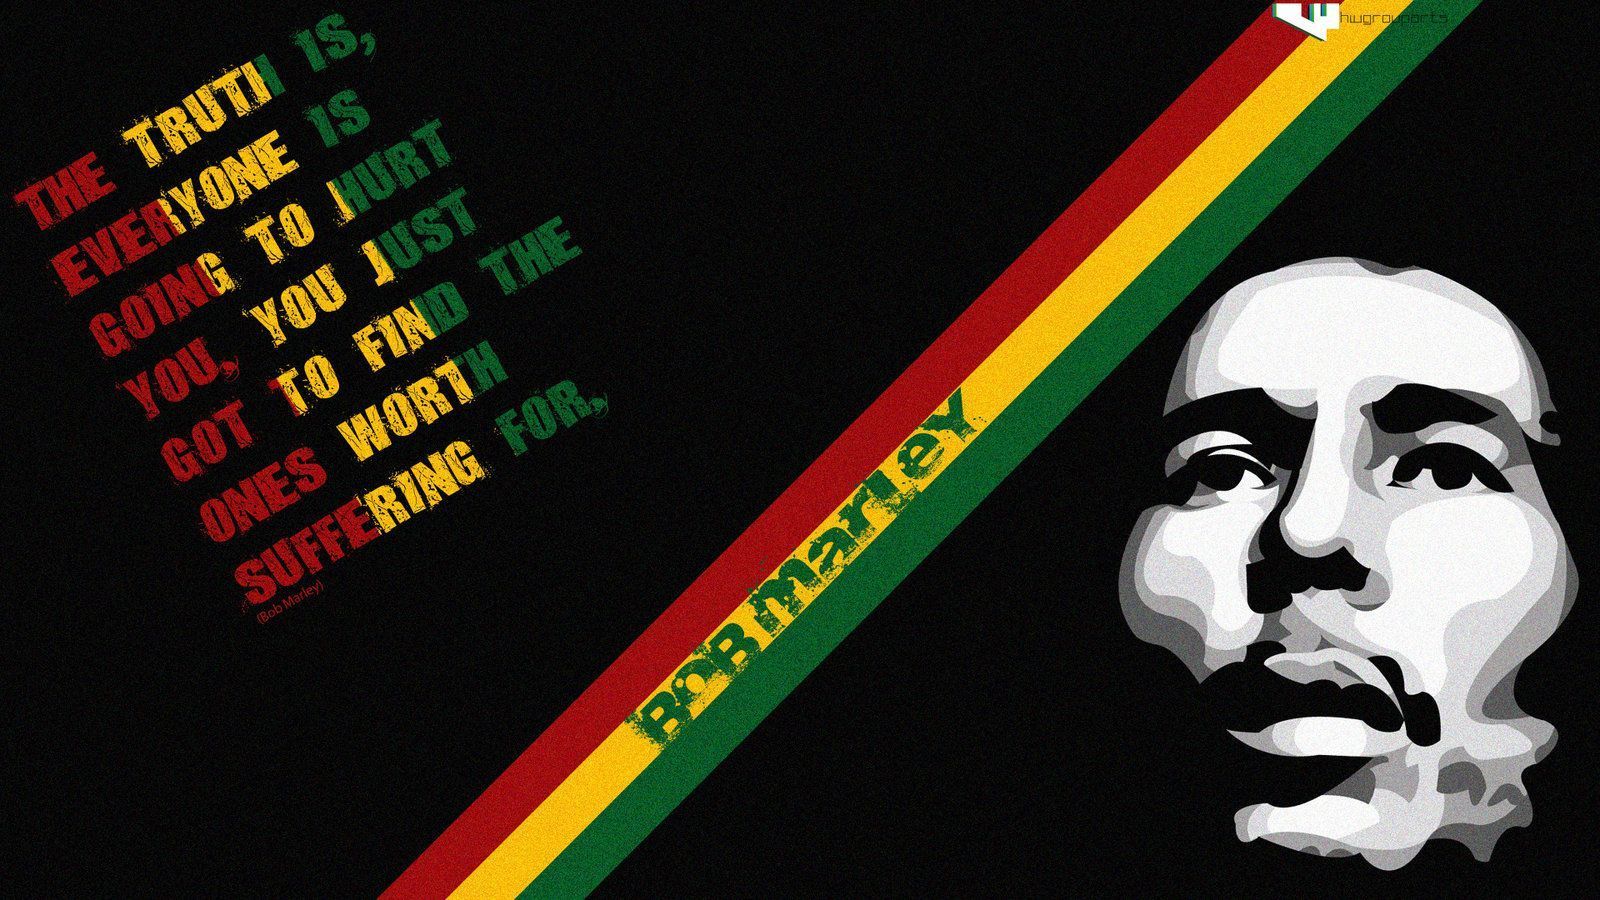 Bob marley hd graphic wallpaper - Bob Marley Wallpaper